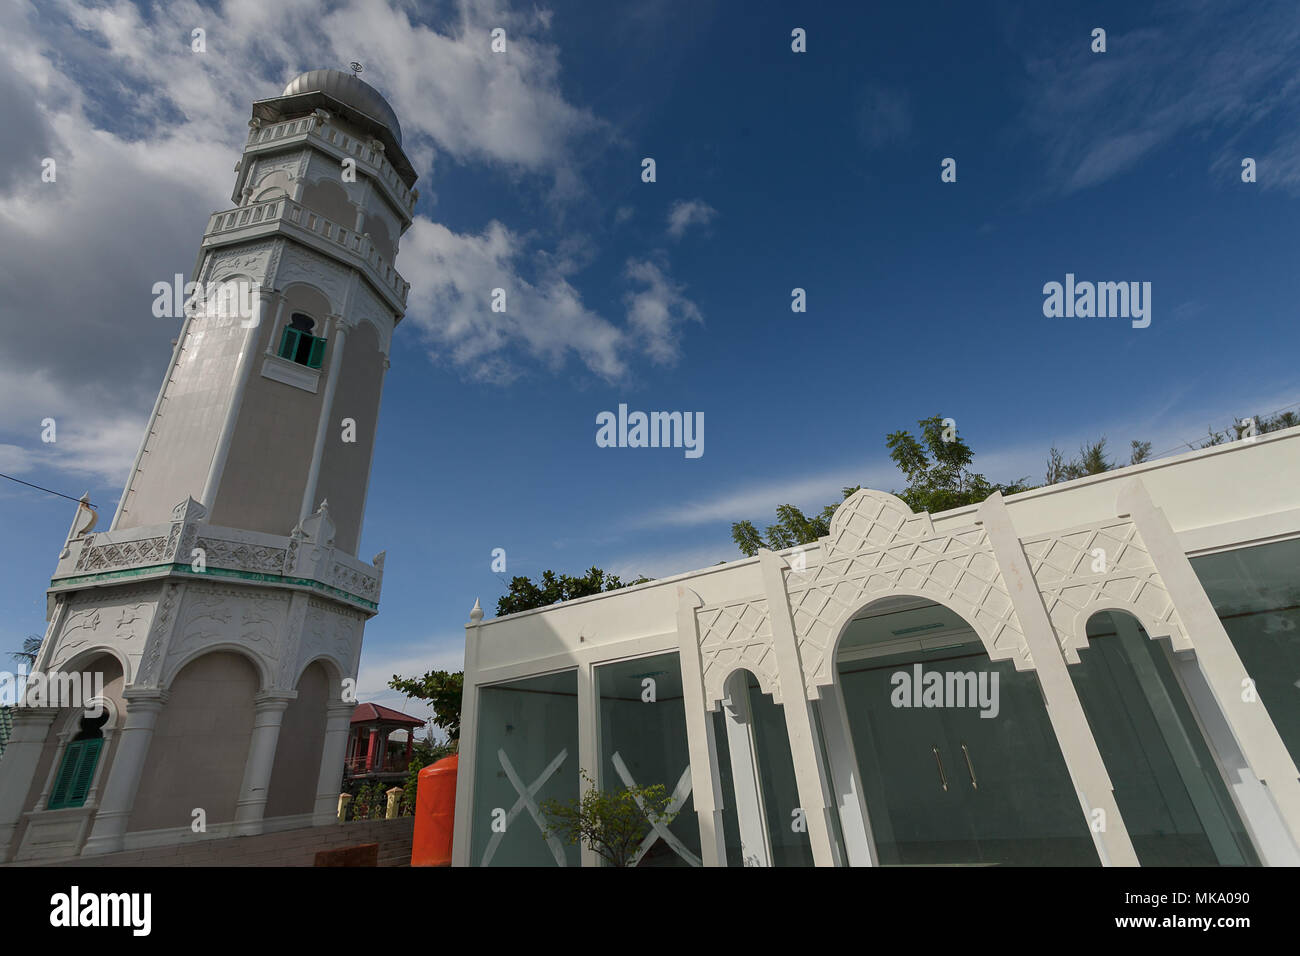 Mosque Baiturrahim, at Aceh district Sumatra, Indonesia Stock Photo